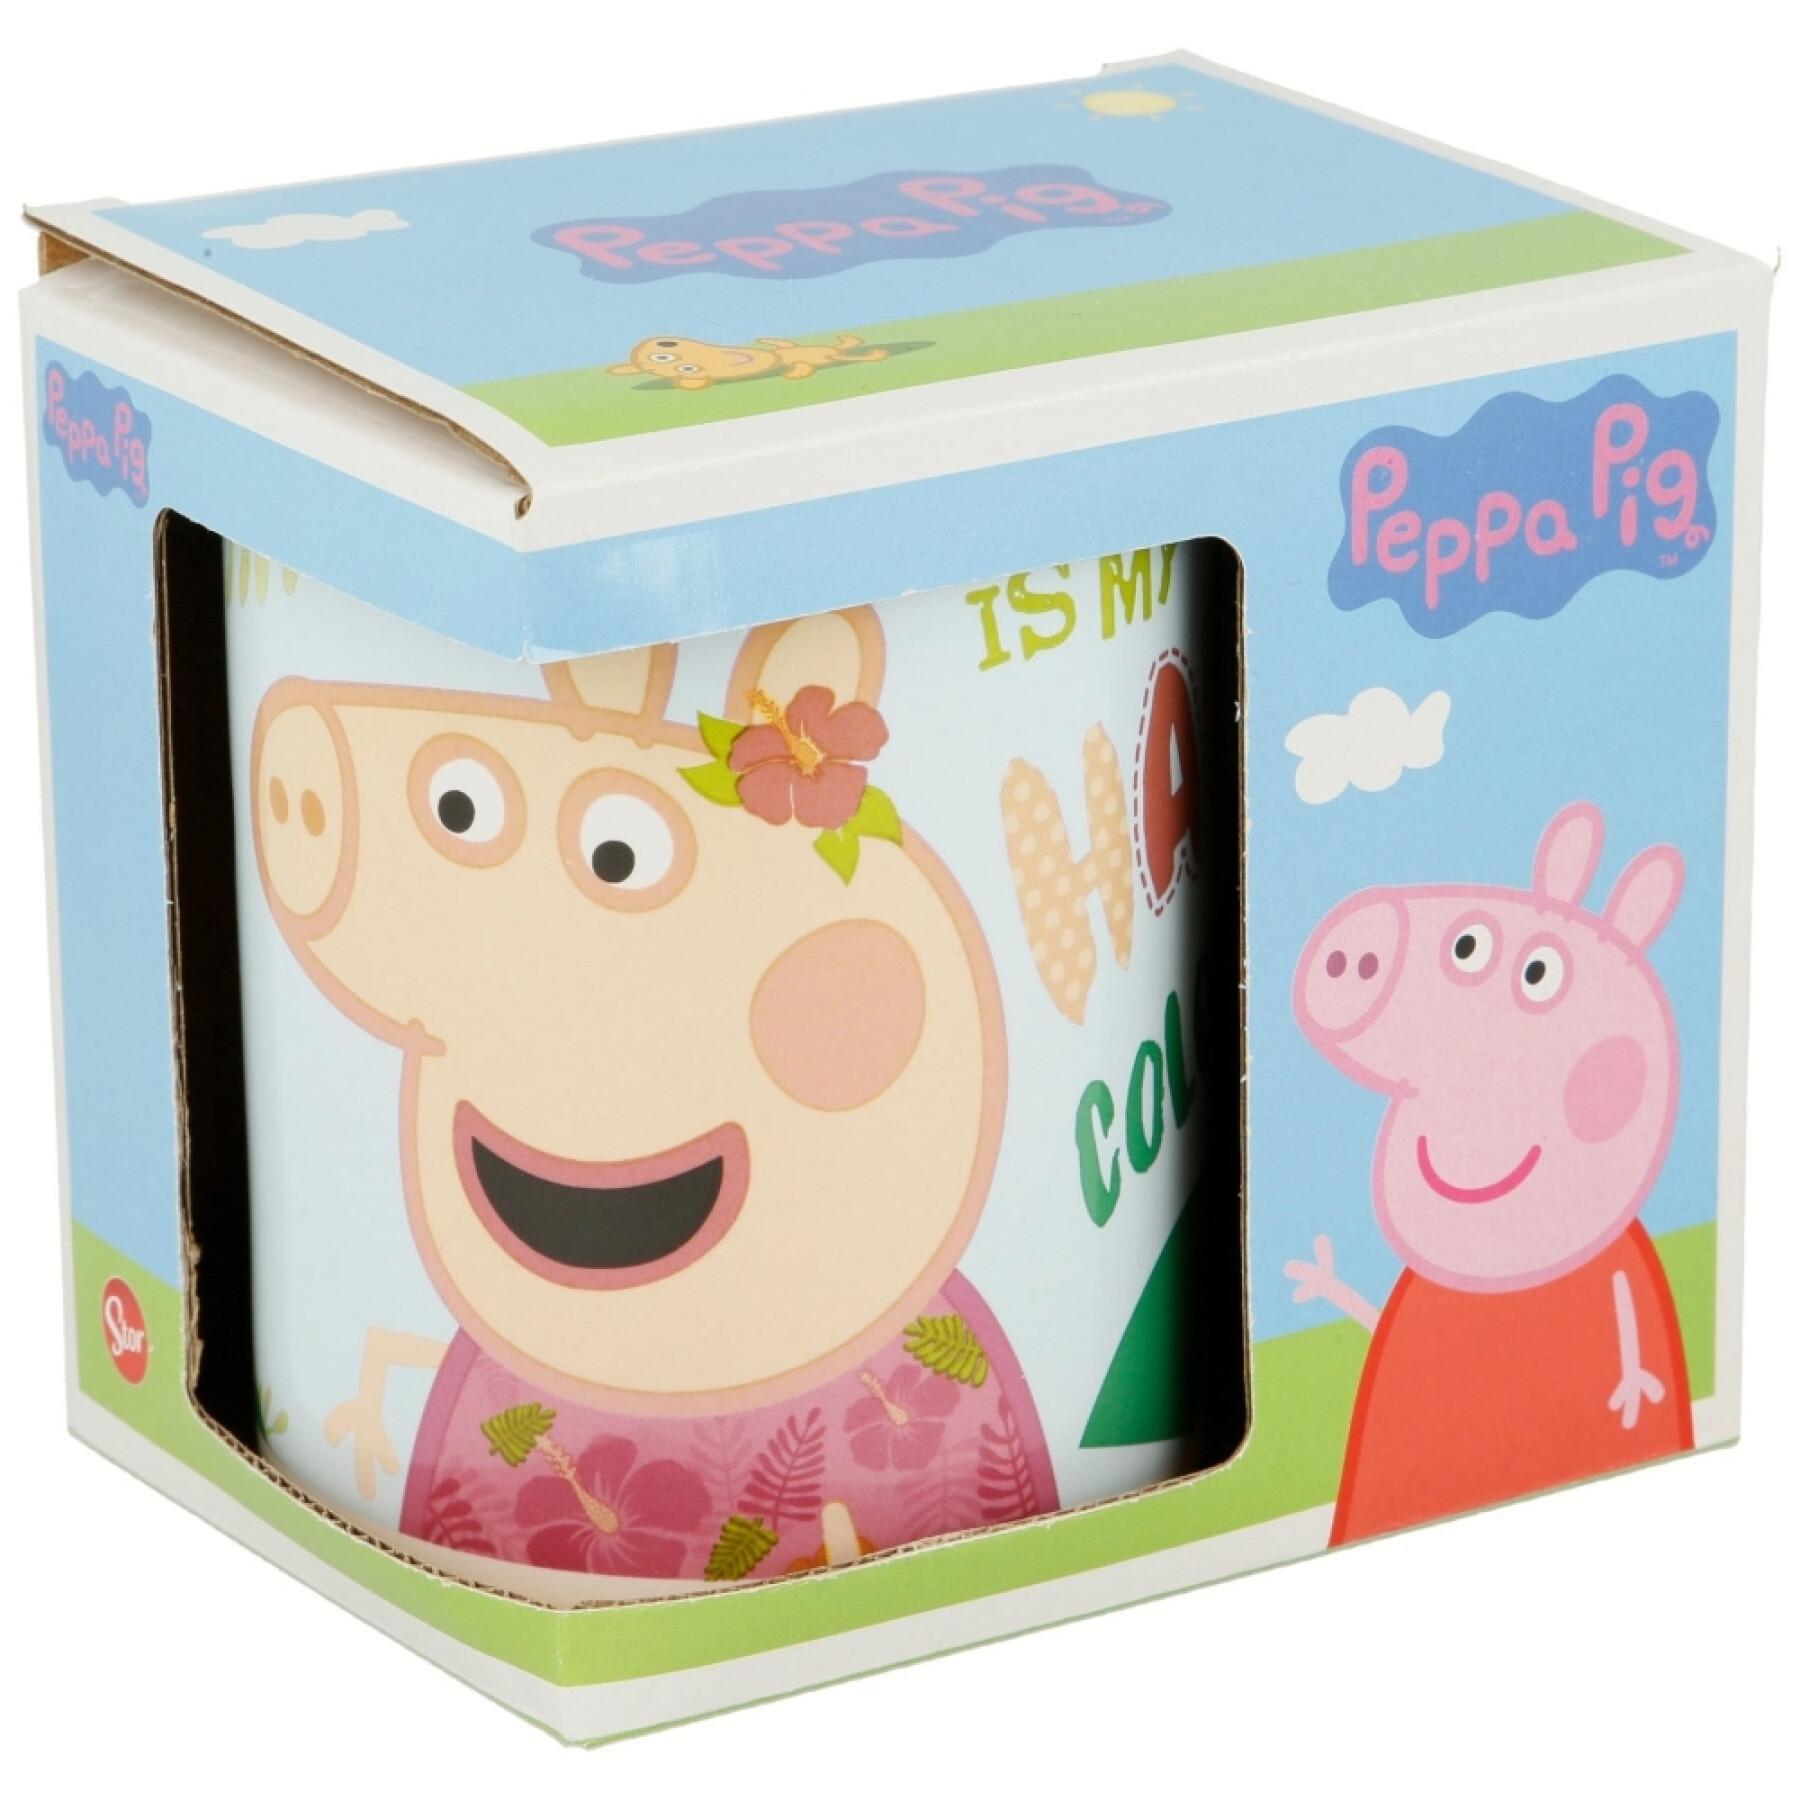 Ceramic mug gift box Peppa Pig